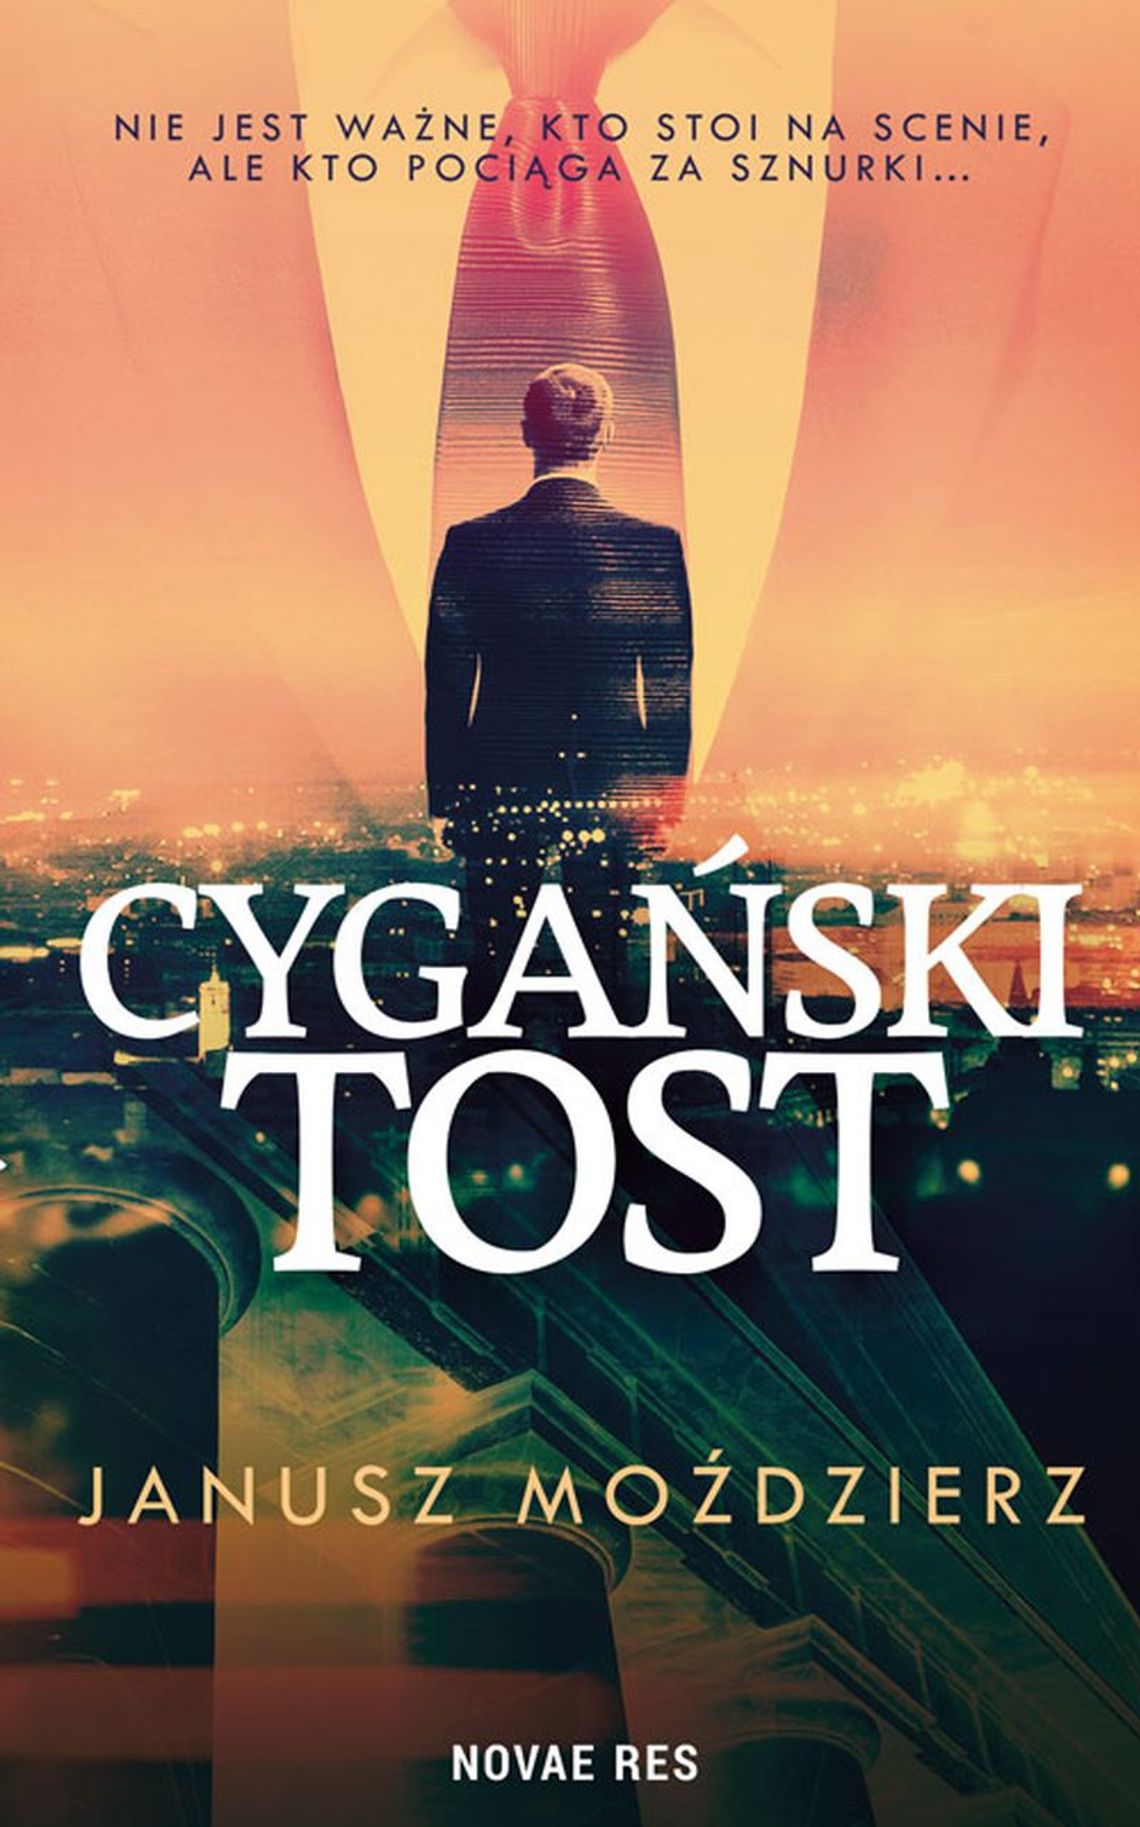 "Cygański tost" - Janusz Moździerz